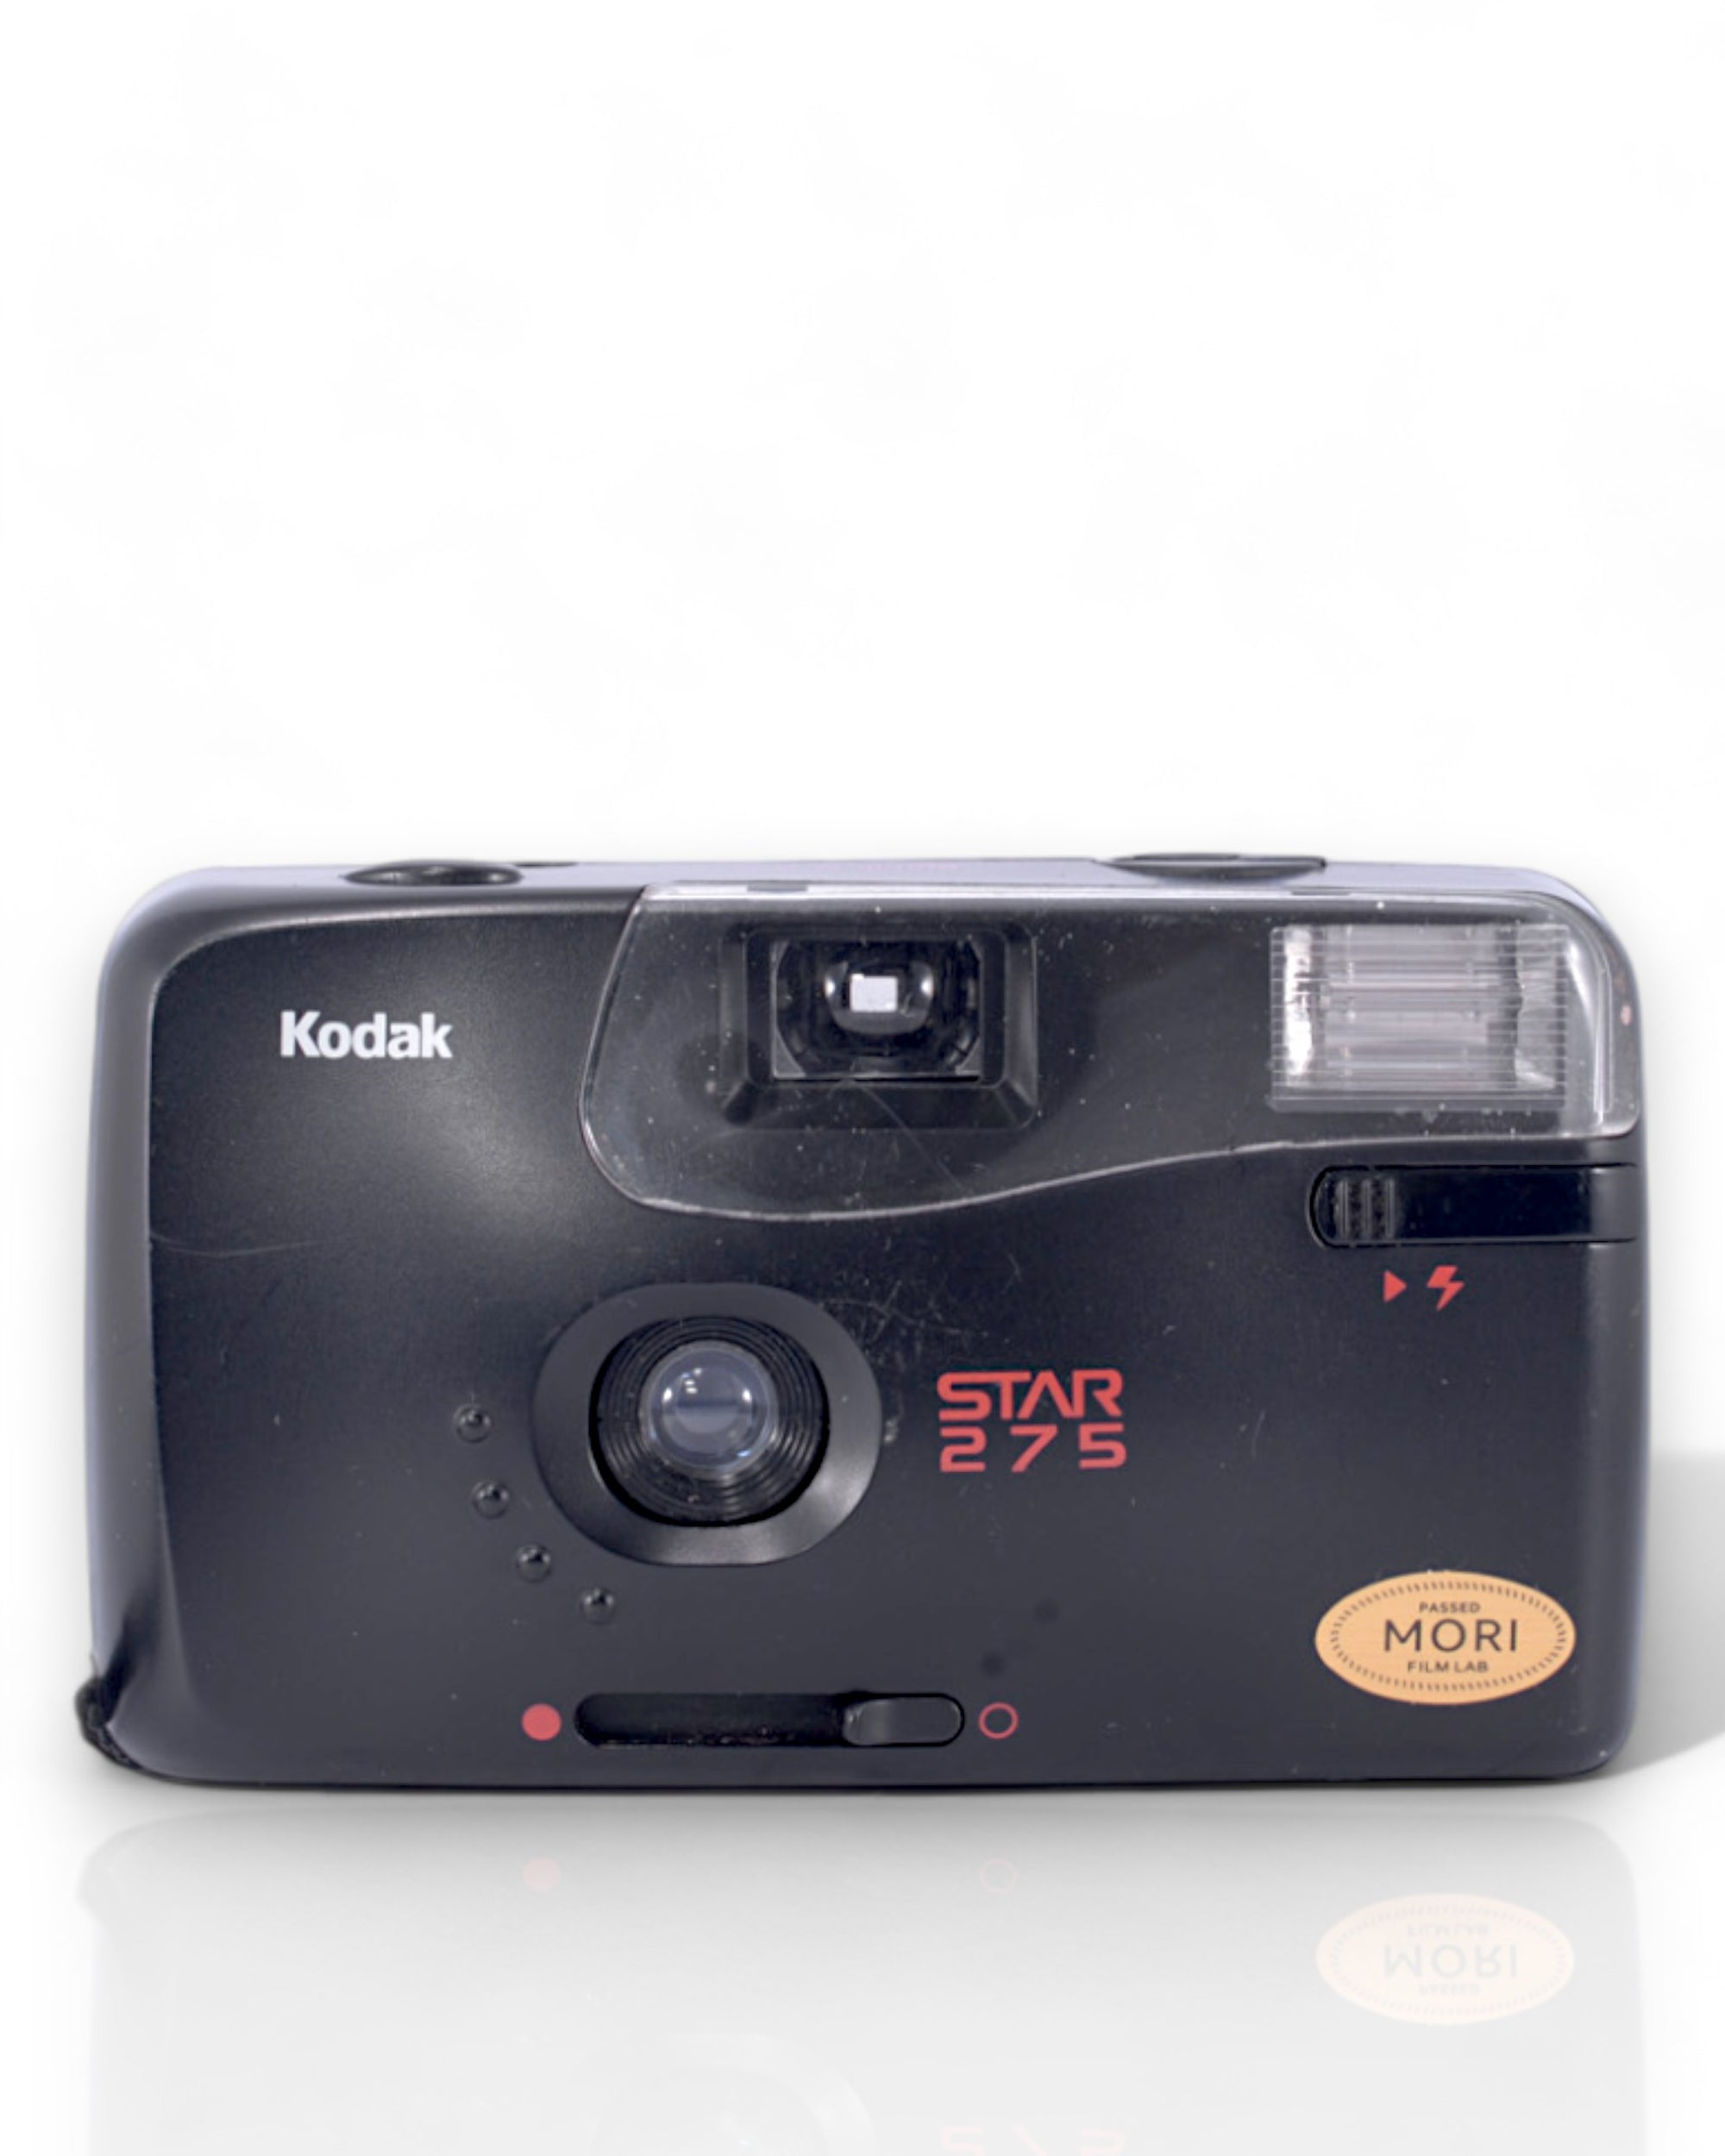 Kodak Star 275 35mm point & shoot camera